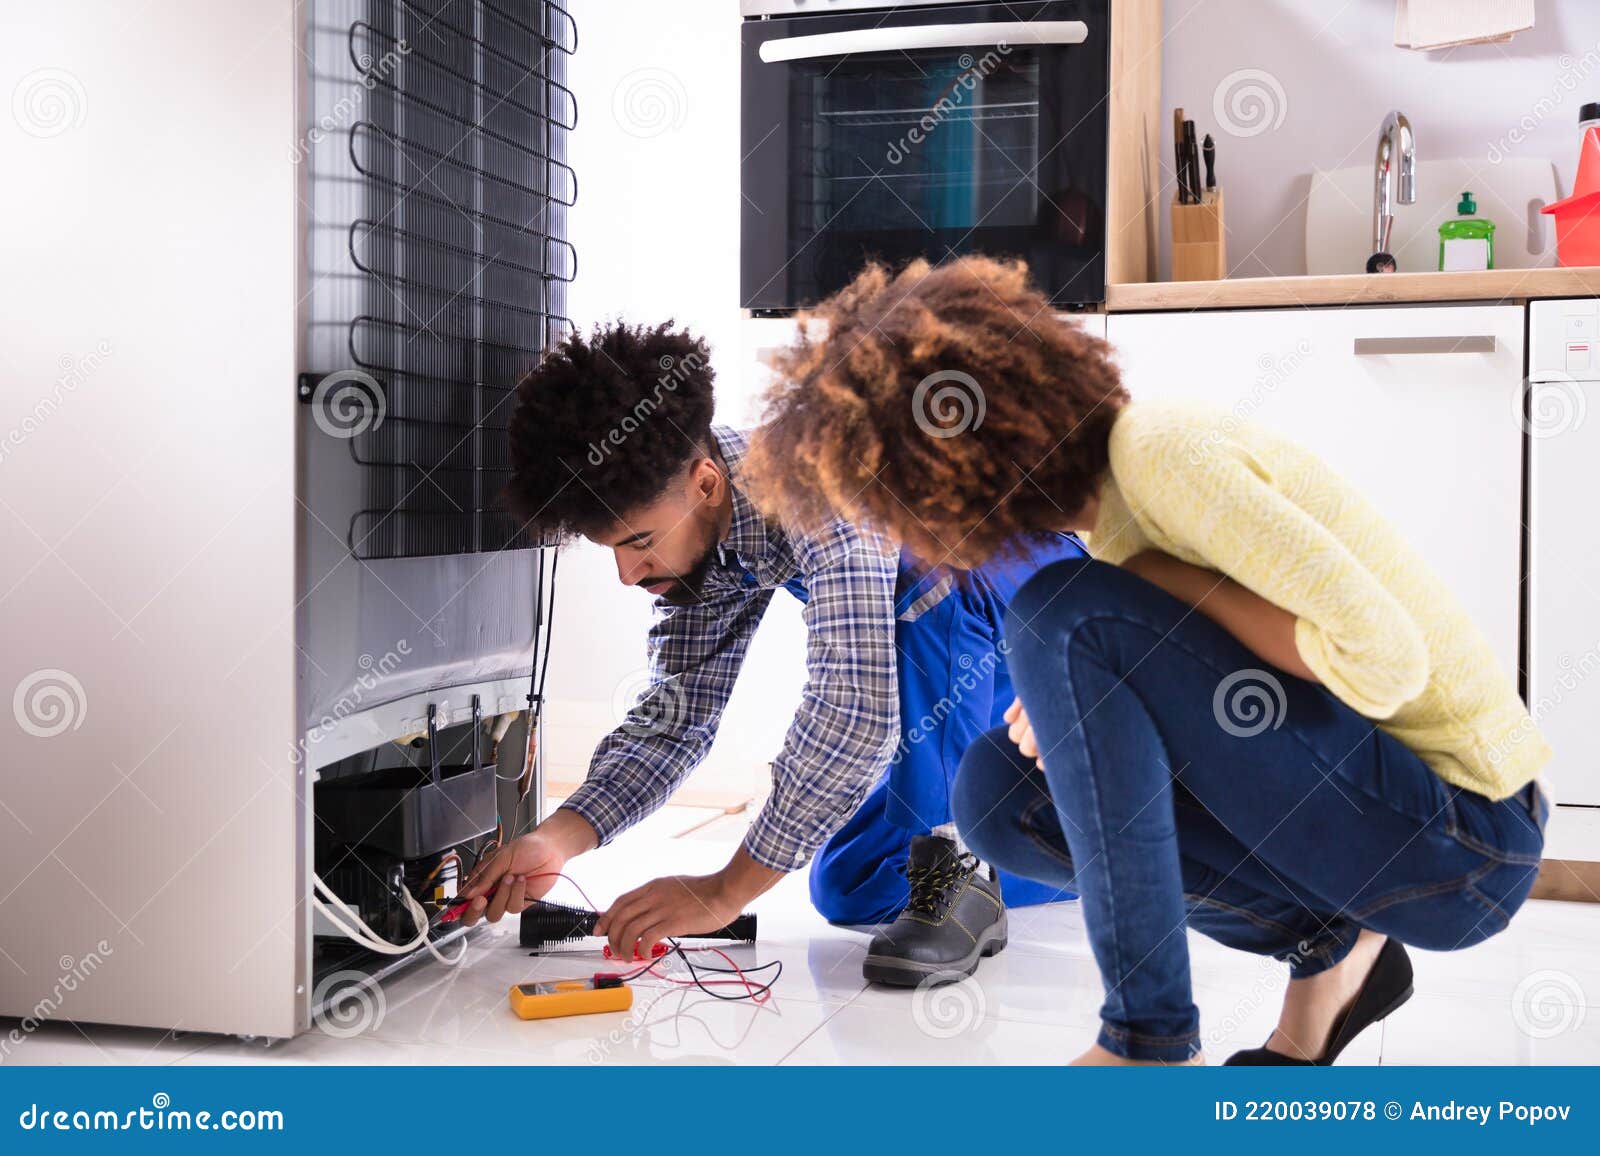 technician examining refrigerator with digital multimeter